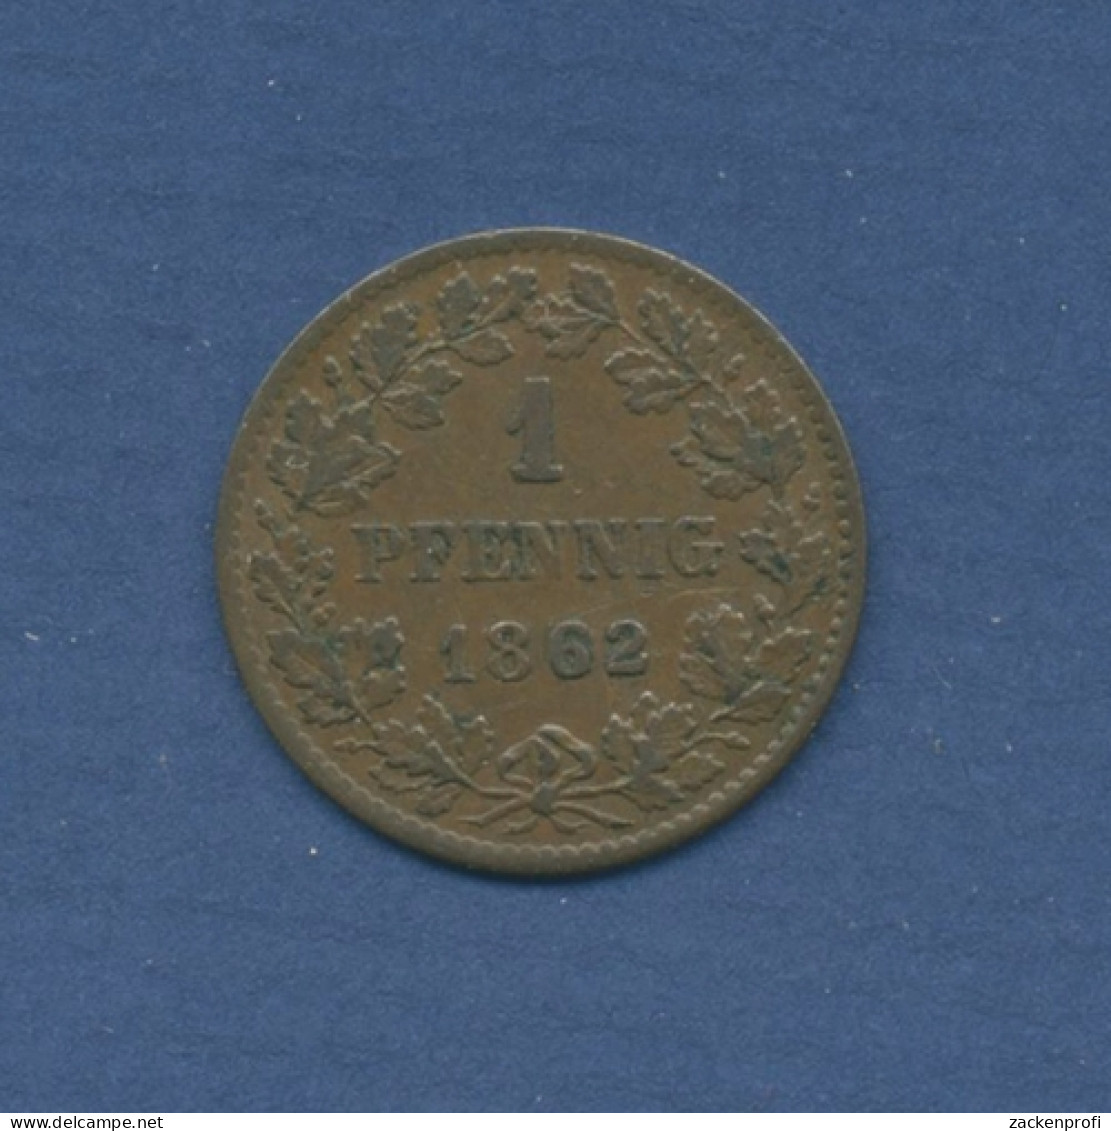 Nassau Herzogtum Pfennig 1862 Herzog Adolph, J 57 Fast Vz (m2054) - Groschen & Andere Kleinmünzen